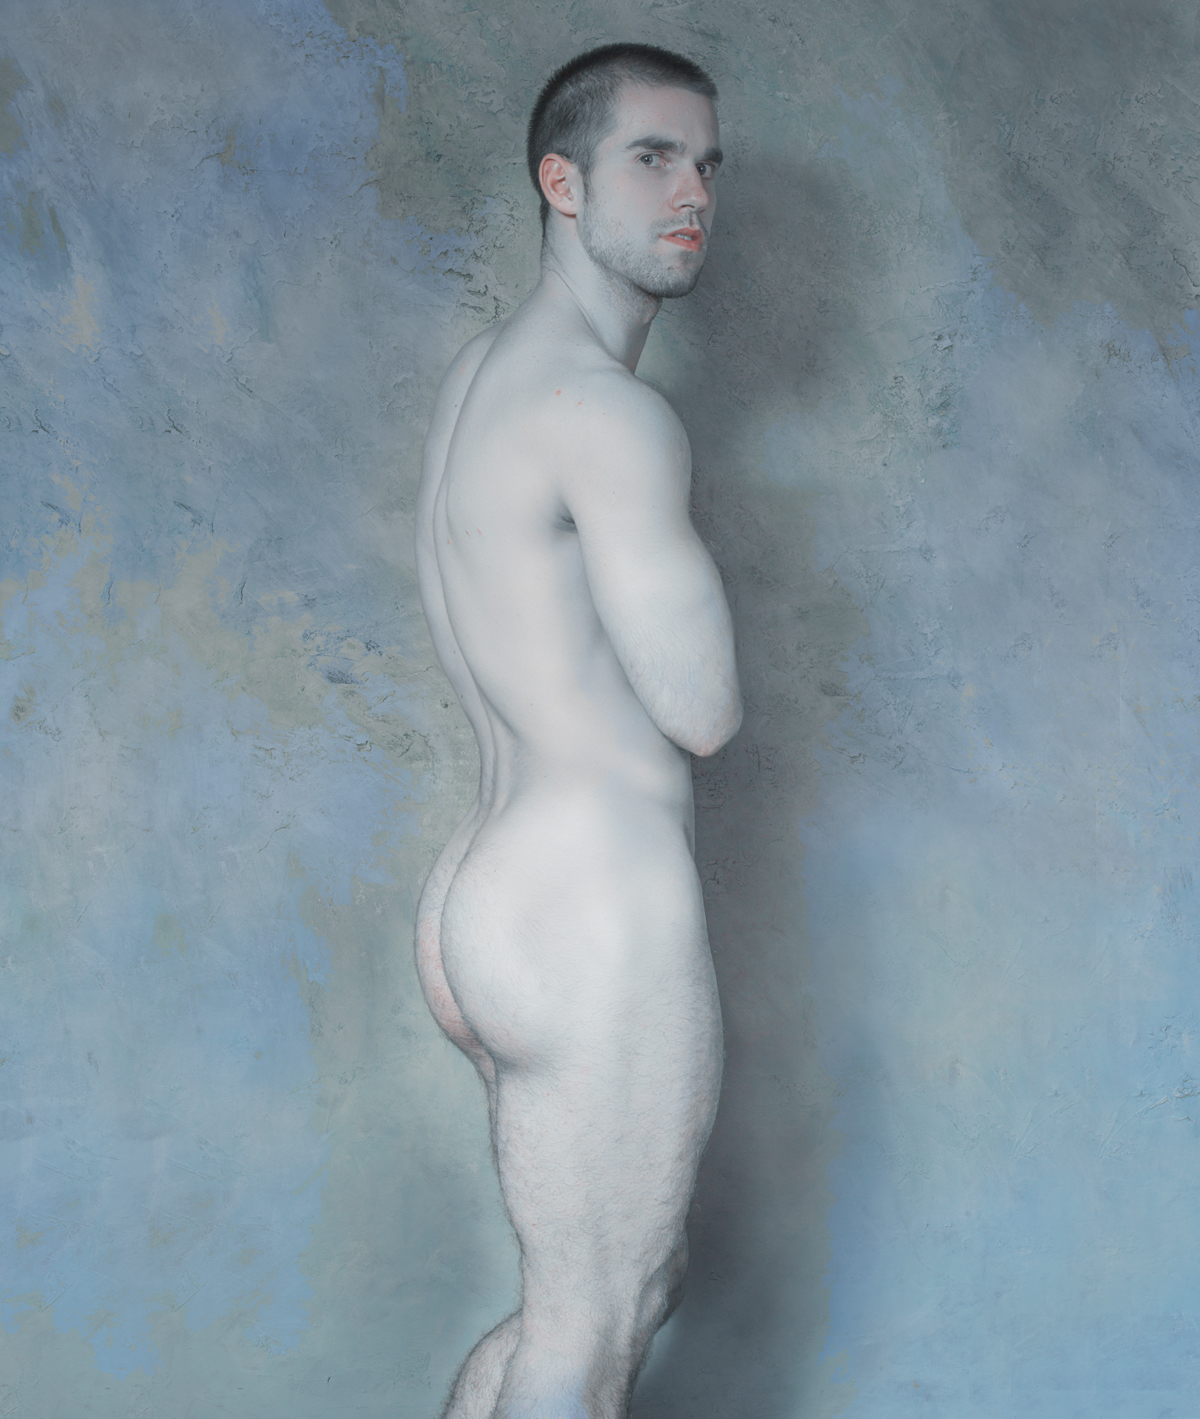 fine-art-male-photography-male-nudes-oil-paintings-by-troy-schooneman.jpg. 